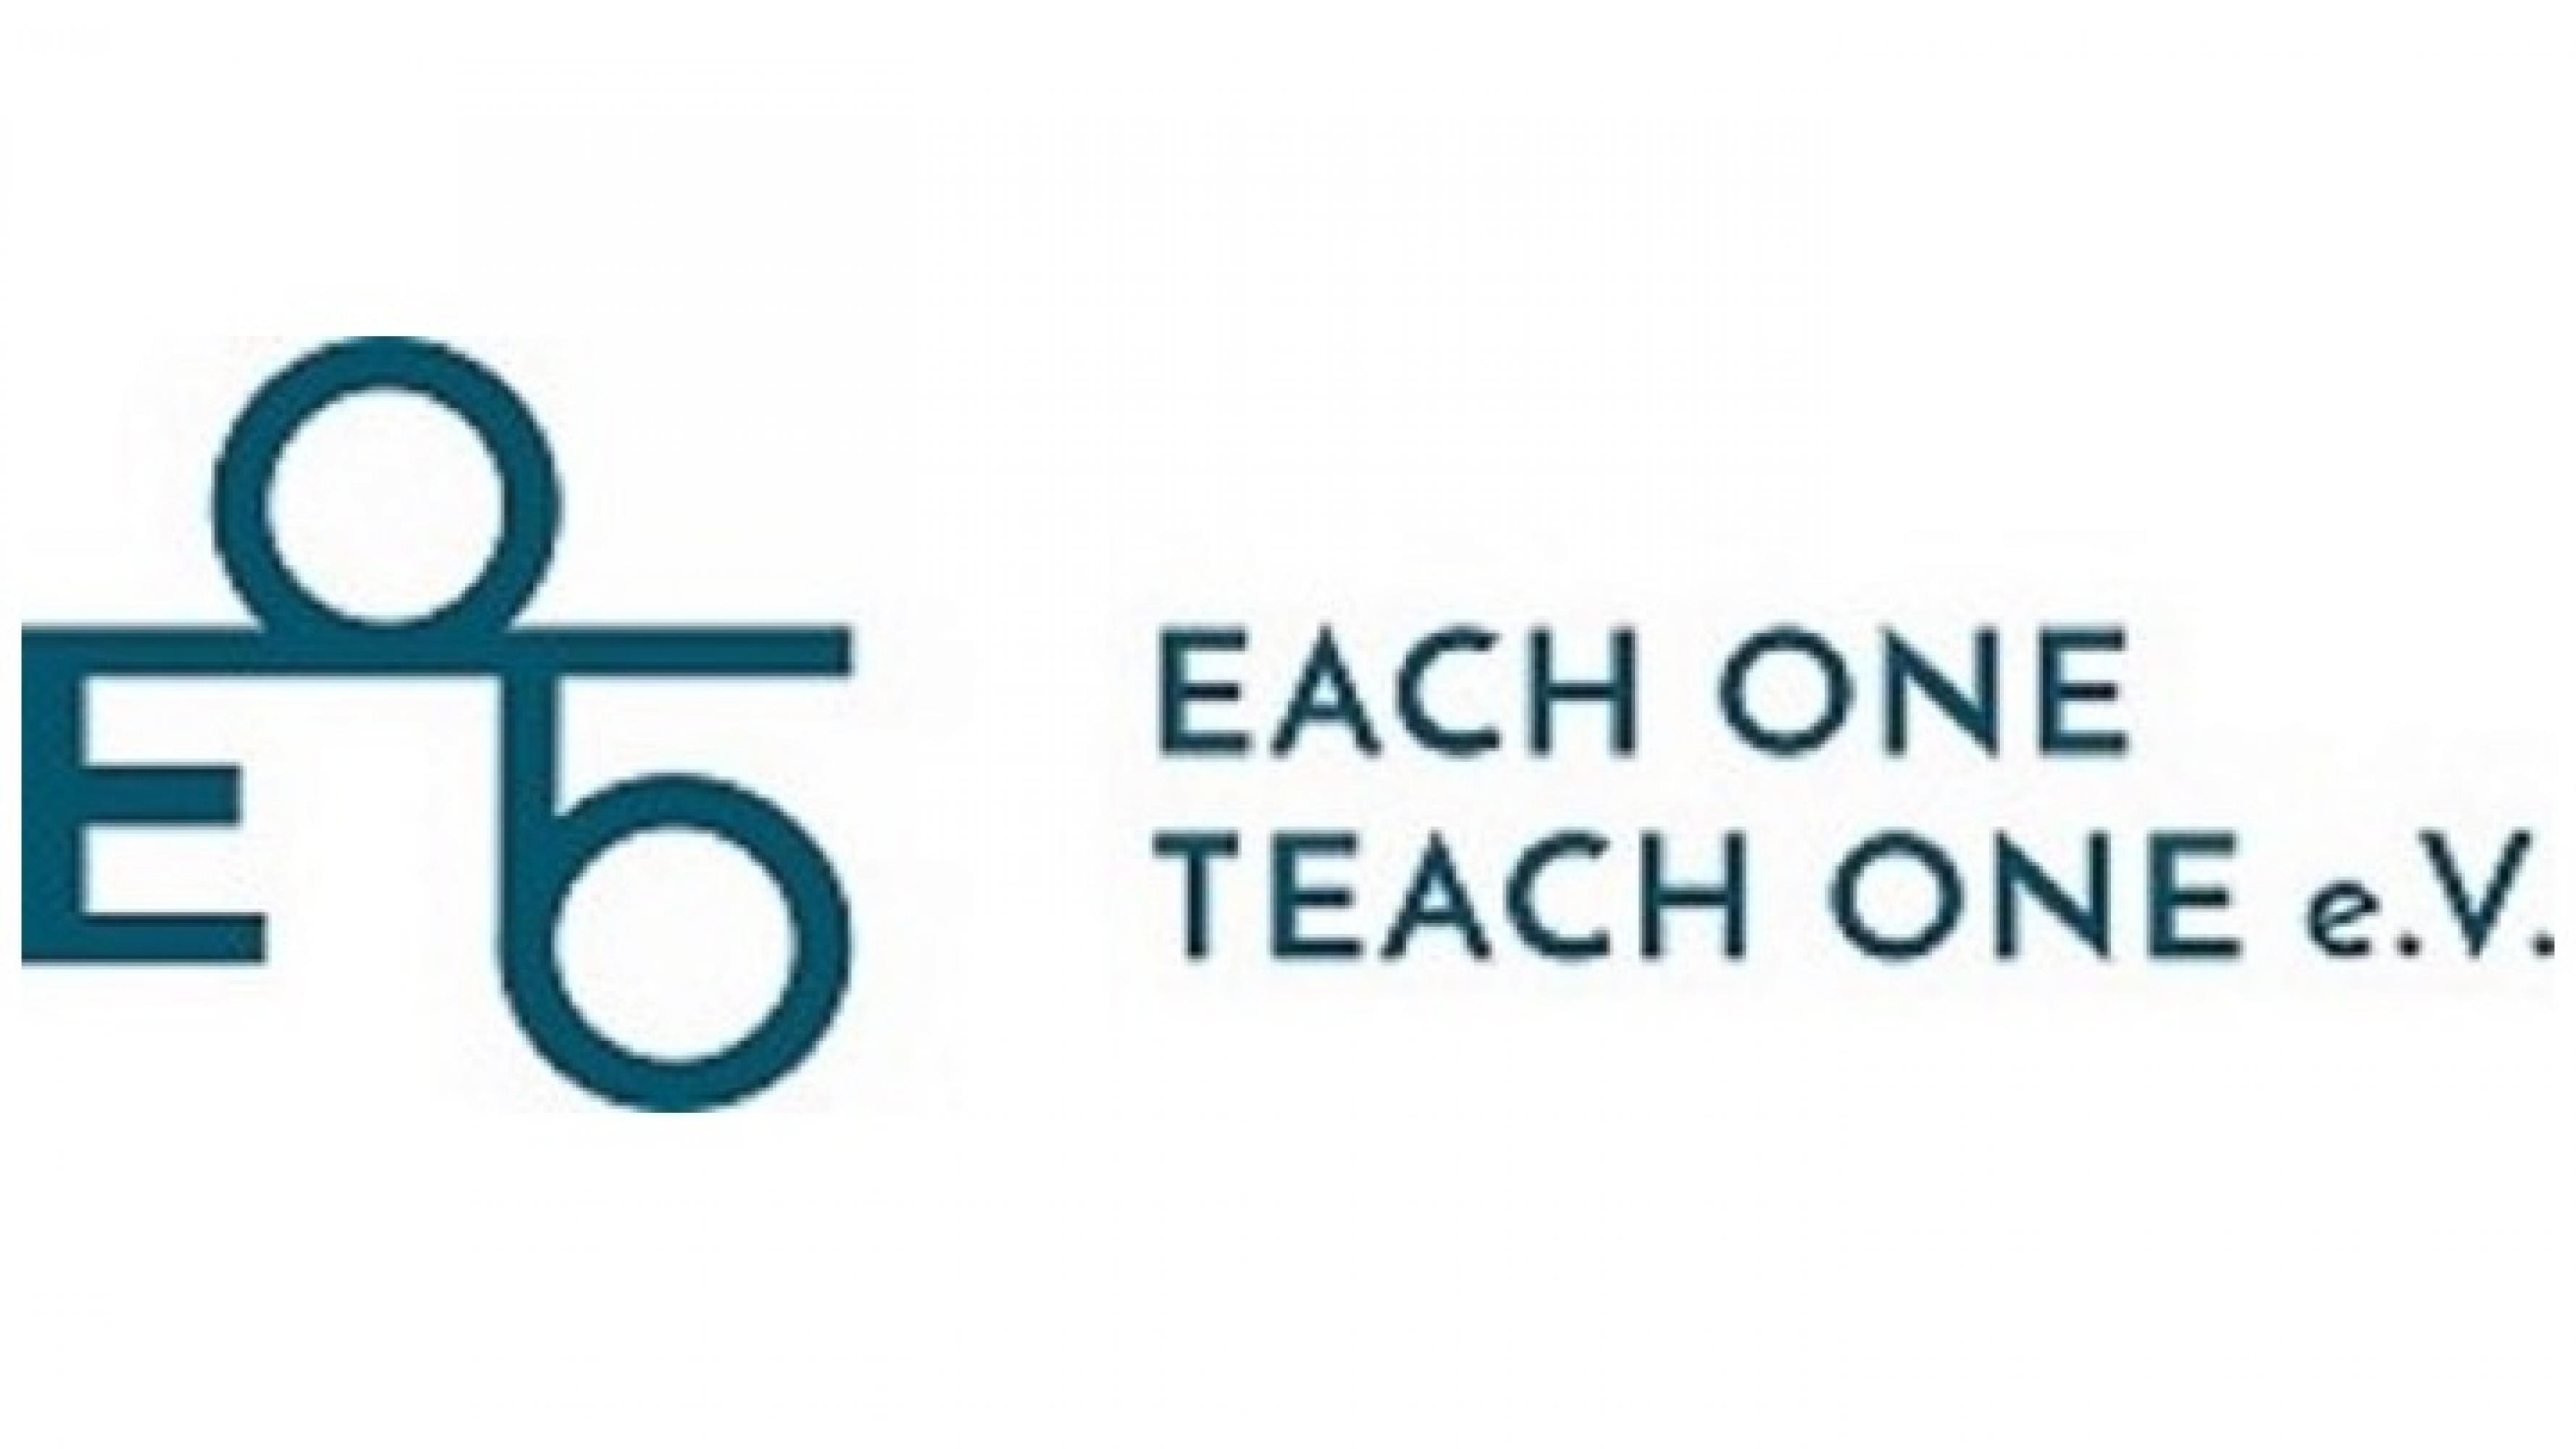 Das Logo von Each one teach one e.V. Abgekürzt als EOTO